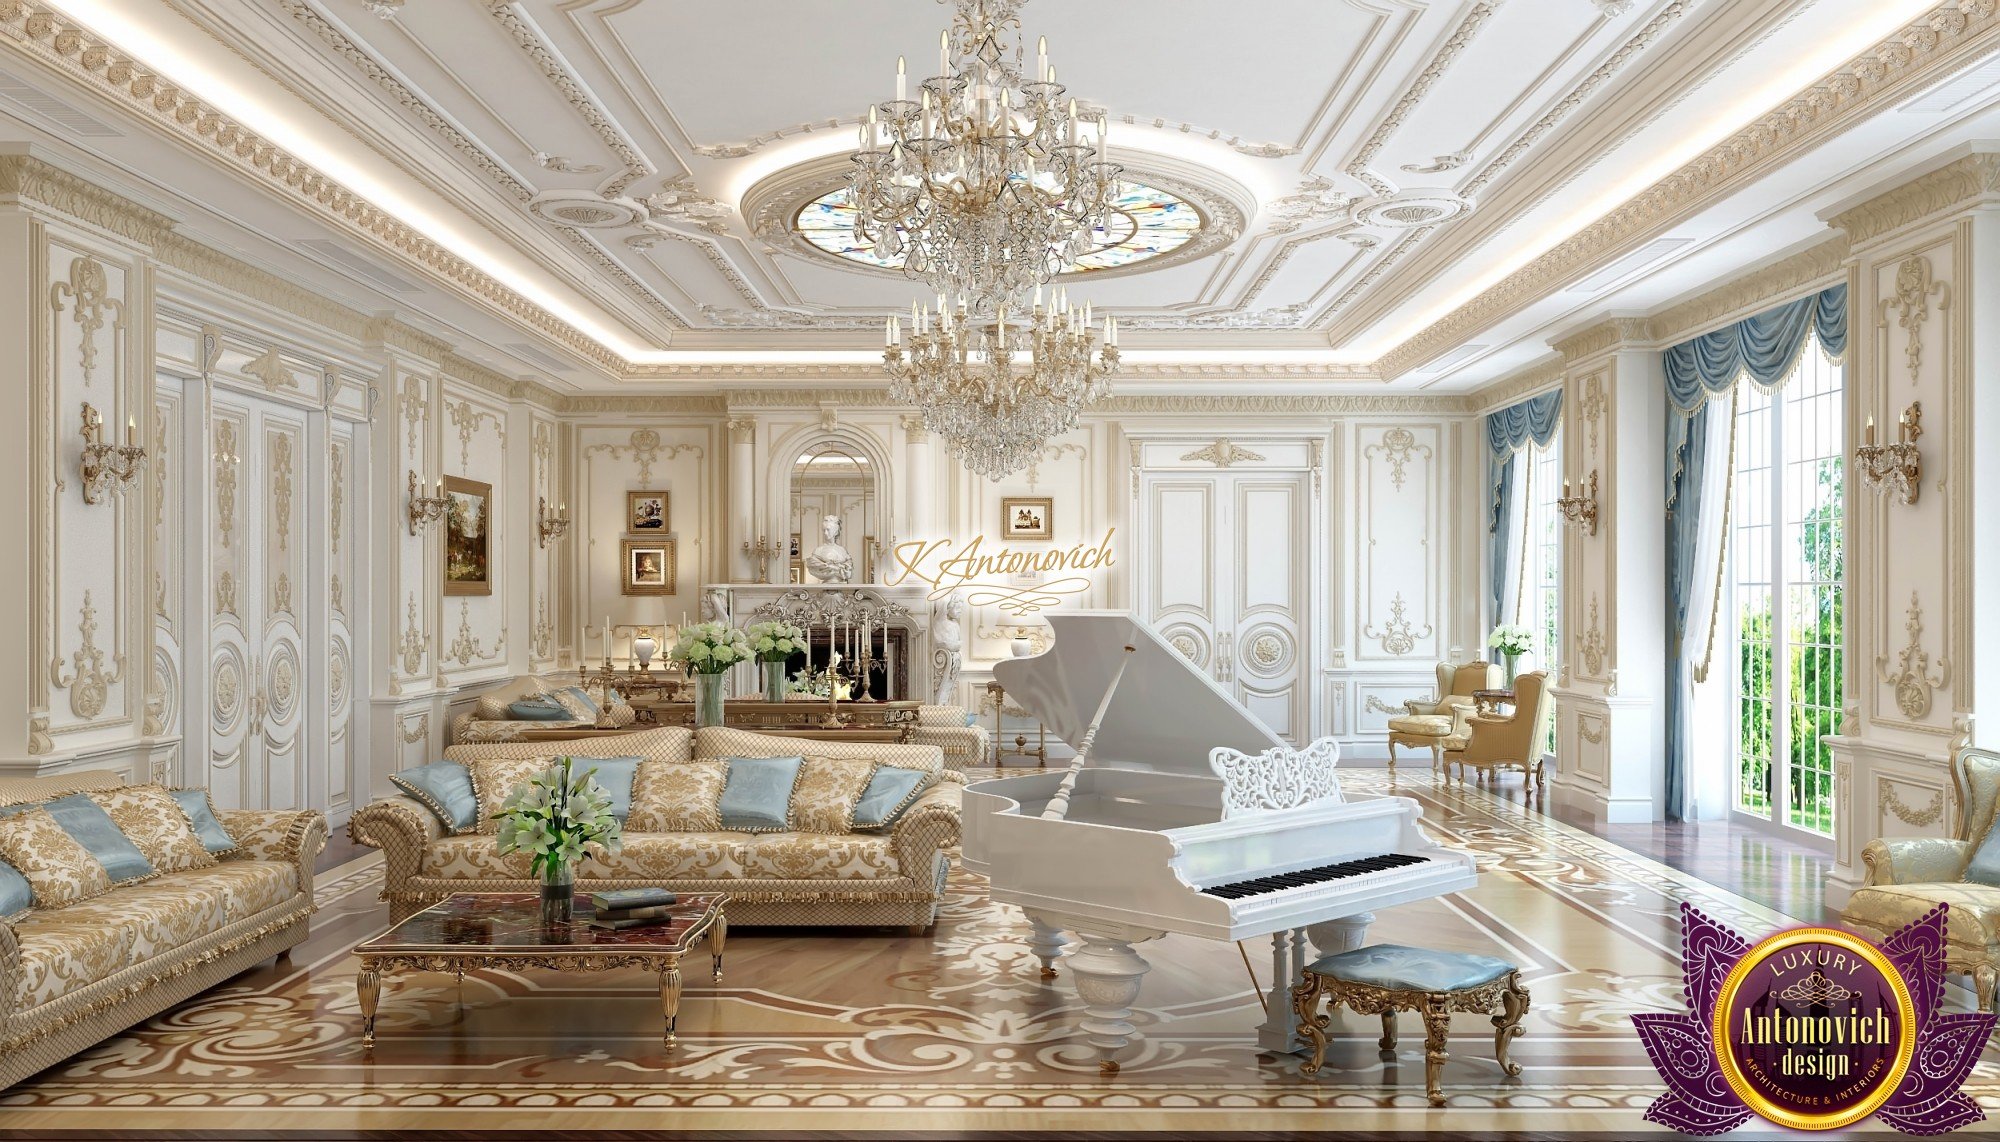 royal living room Royal room living interior antonovich villa splendid livingroom ae jooinn